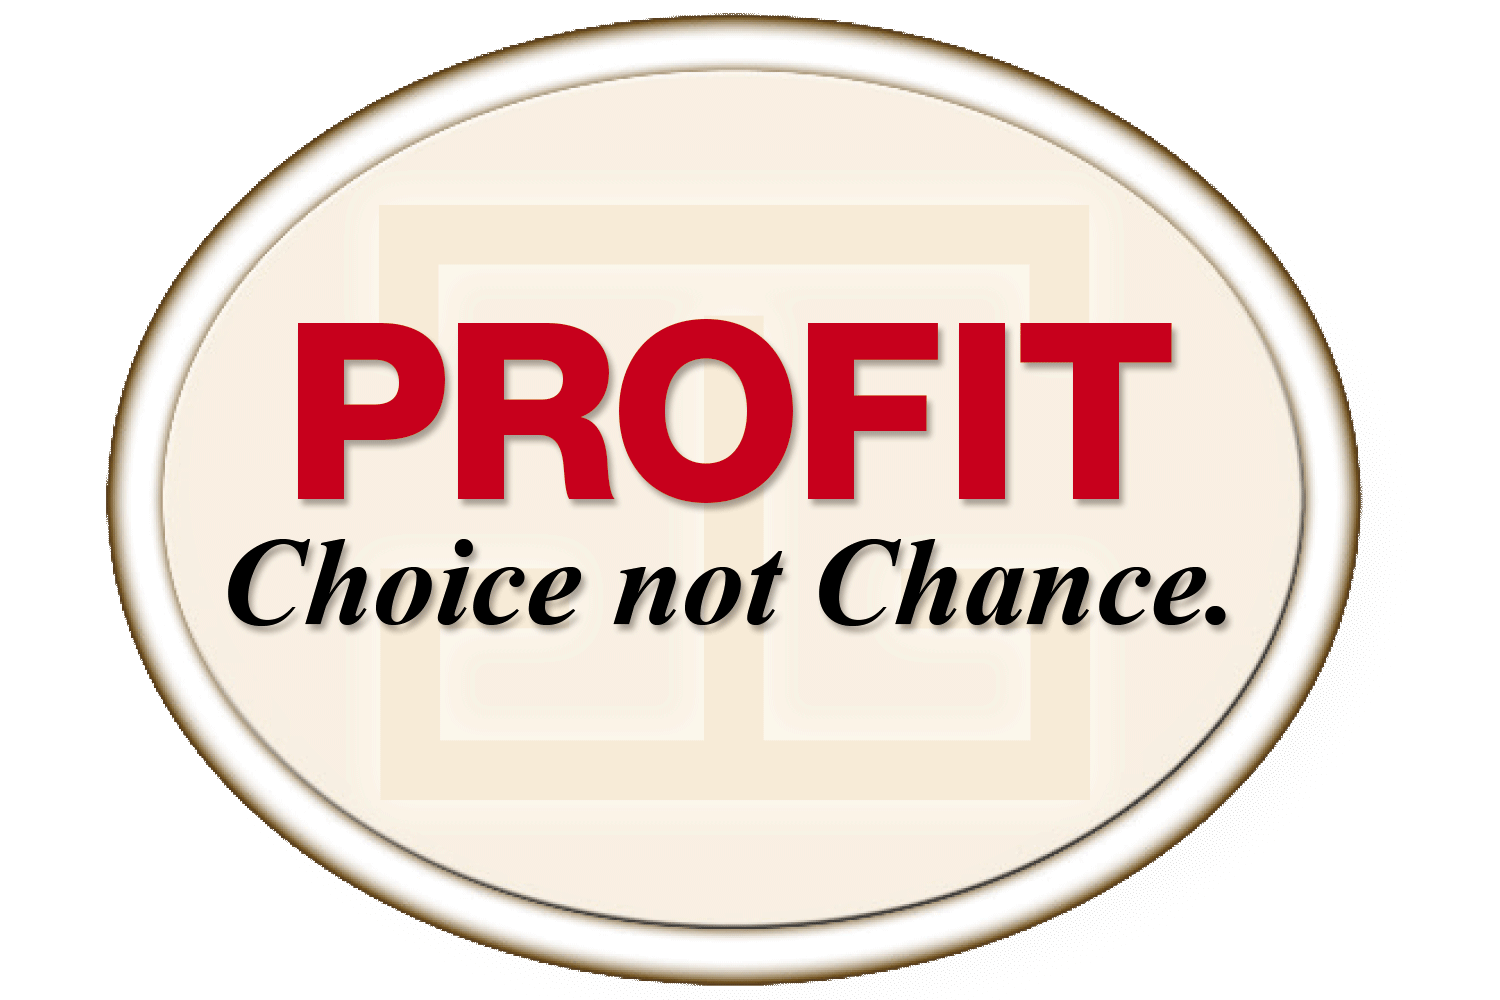 Profit Choice not Chance